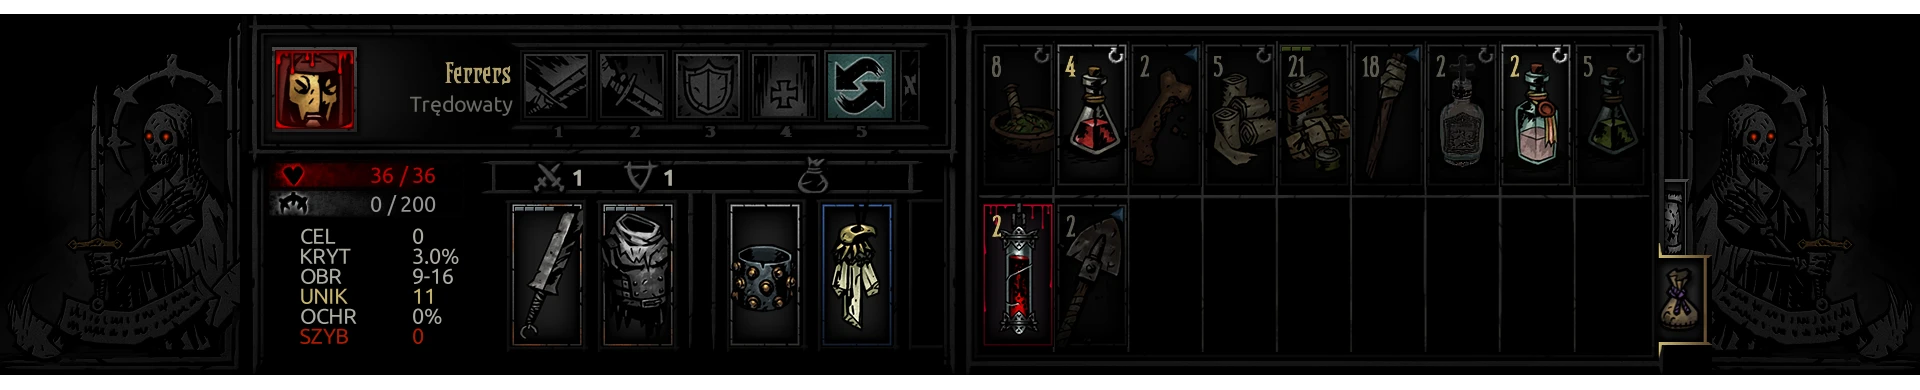 darkest dungeon mod inventory